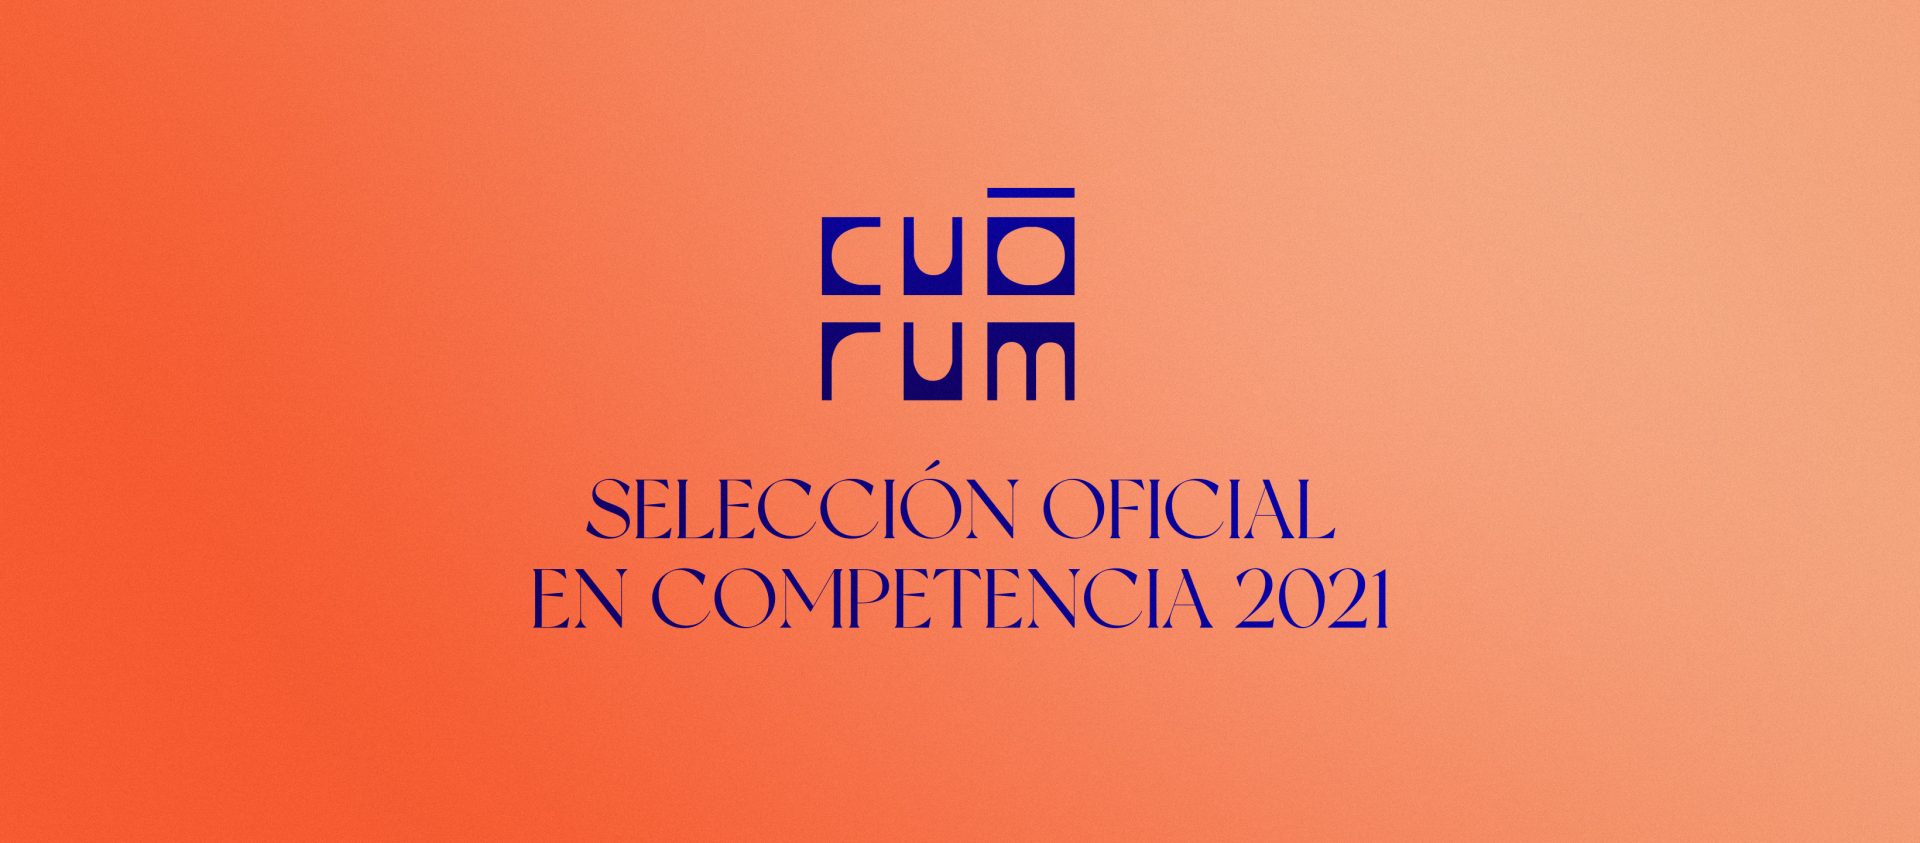 Selección de cortometrajes en competencia Cuórum 2021: Programa 1 post thumbnail image